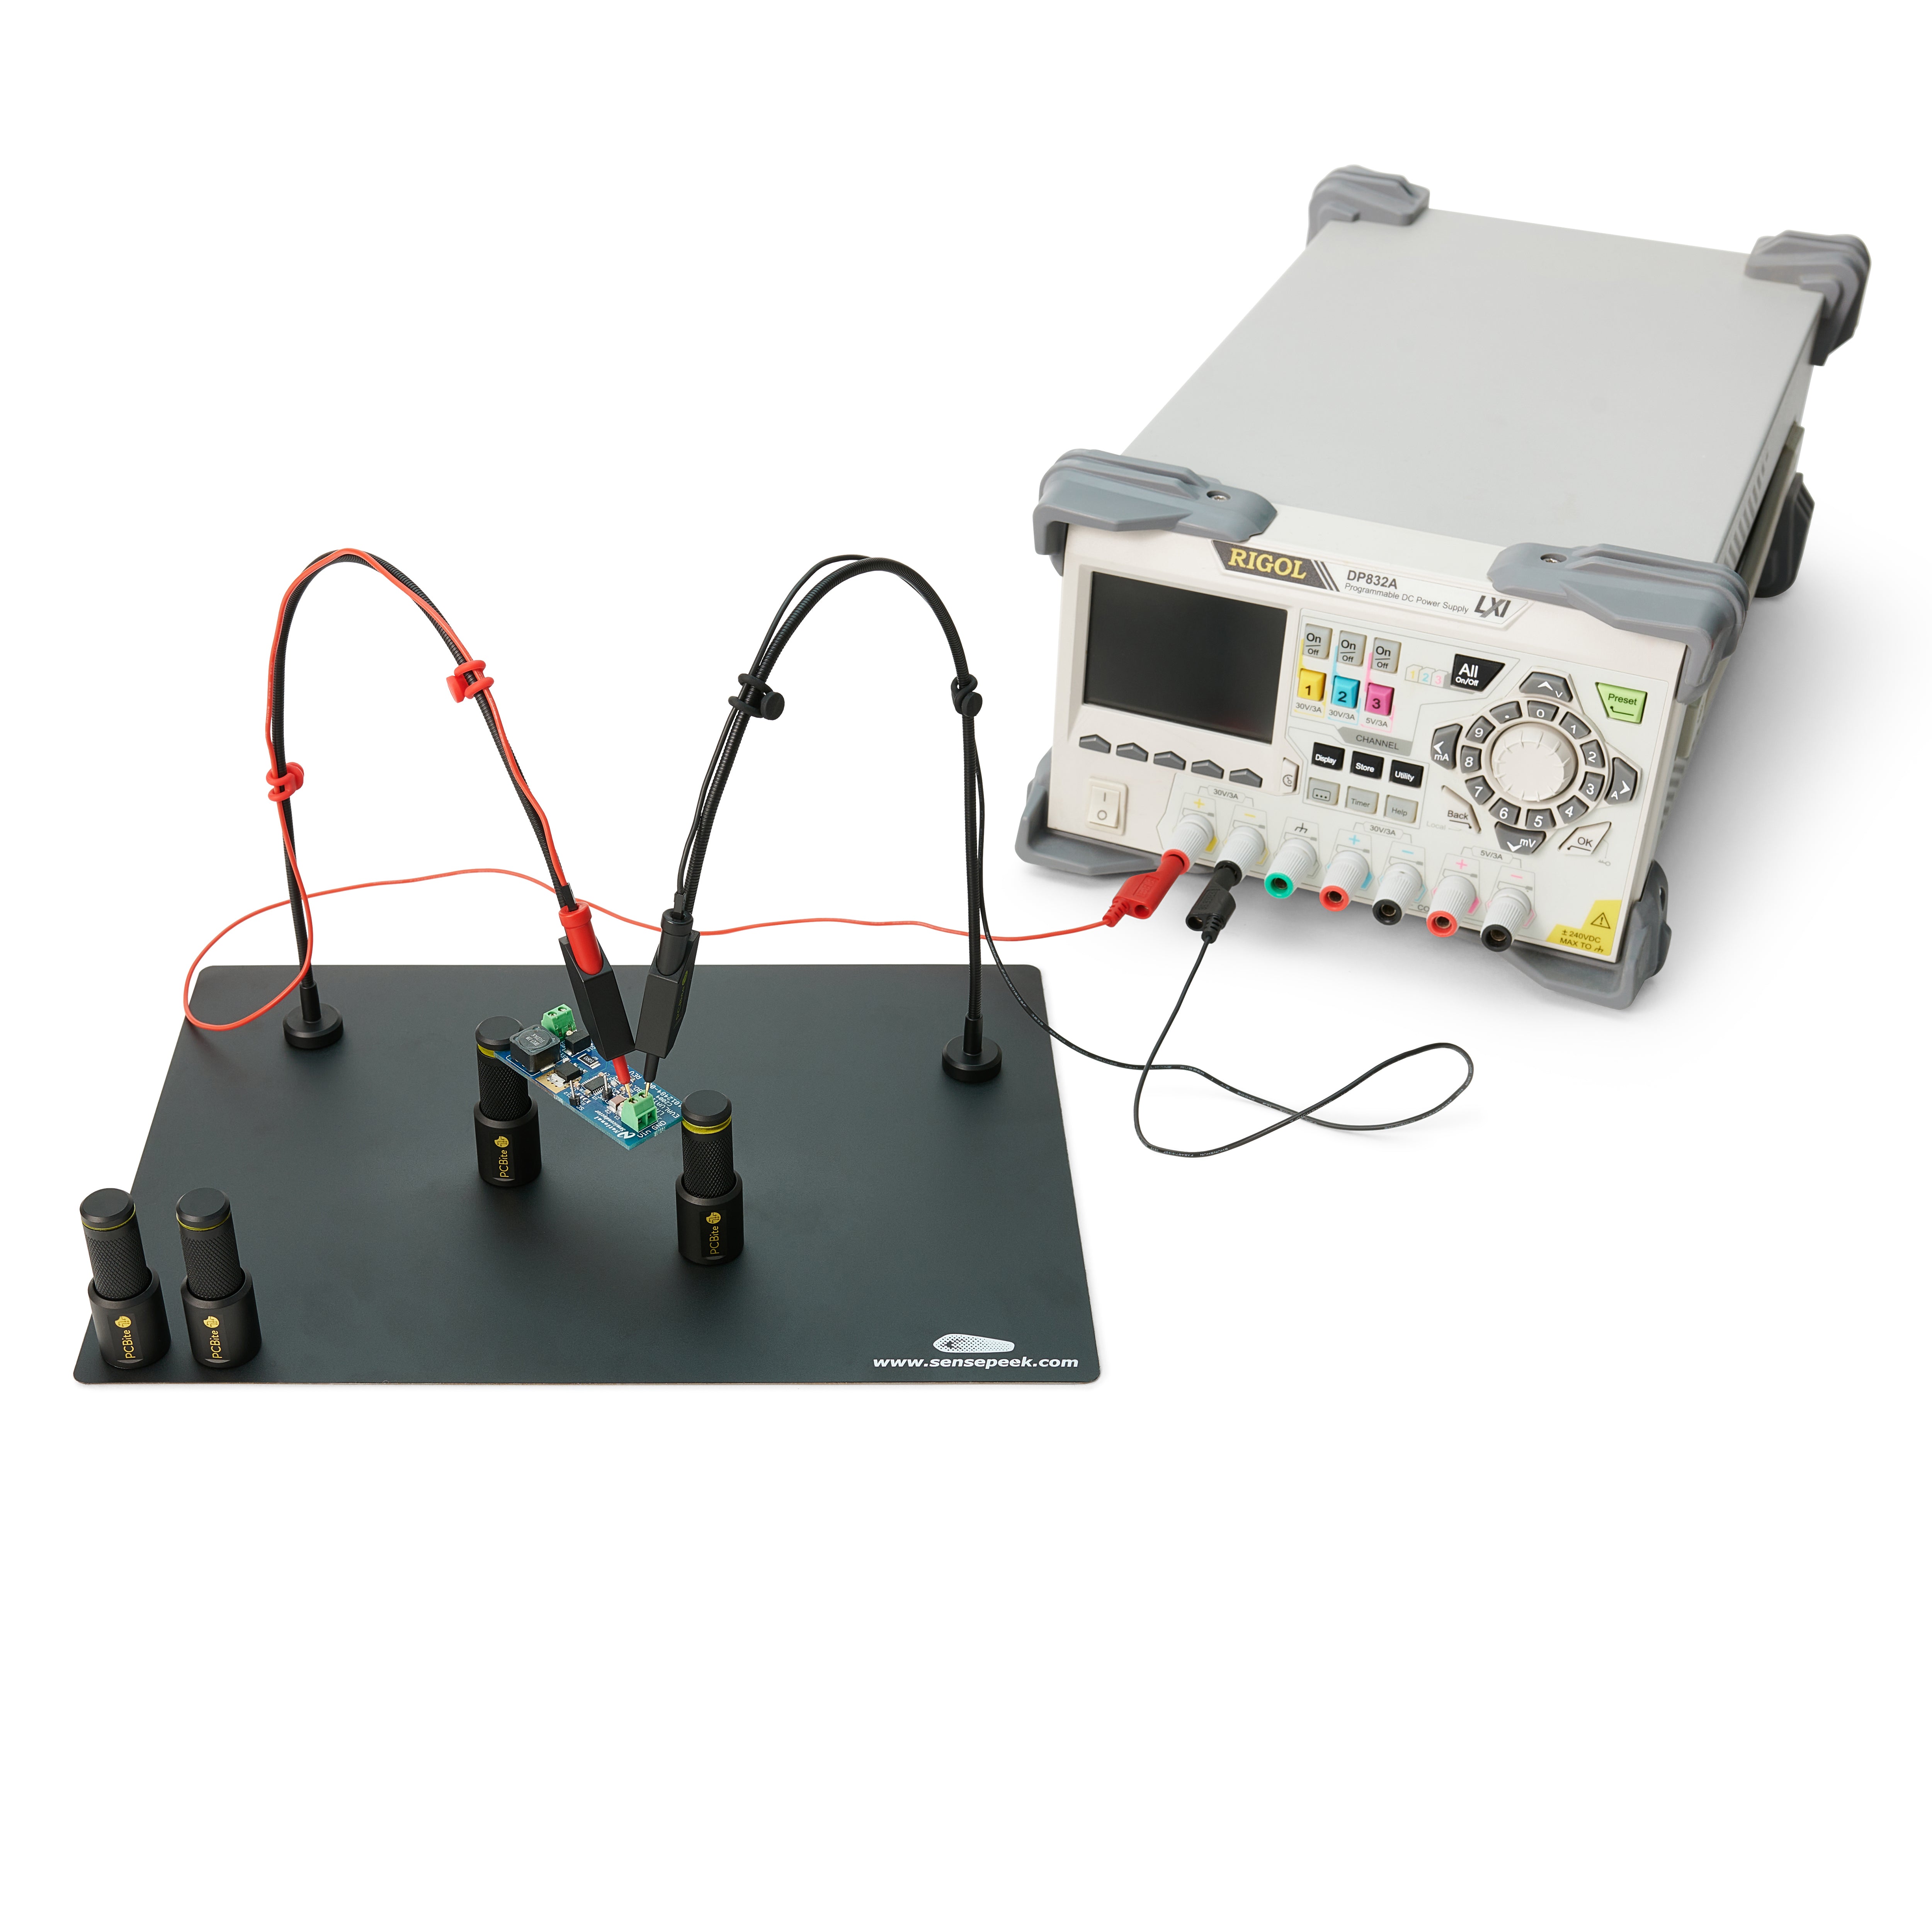 Sensepeek PCBite kit with 2x SQ500 500 MHz and 4x SQ10 handsfree probes